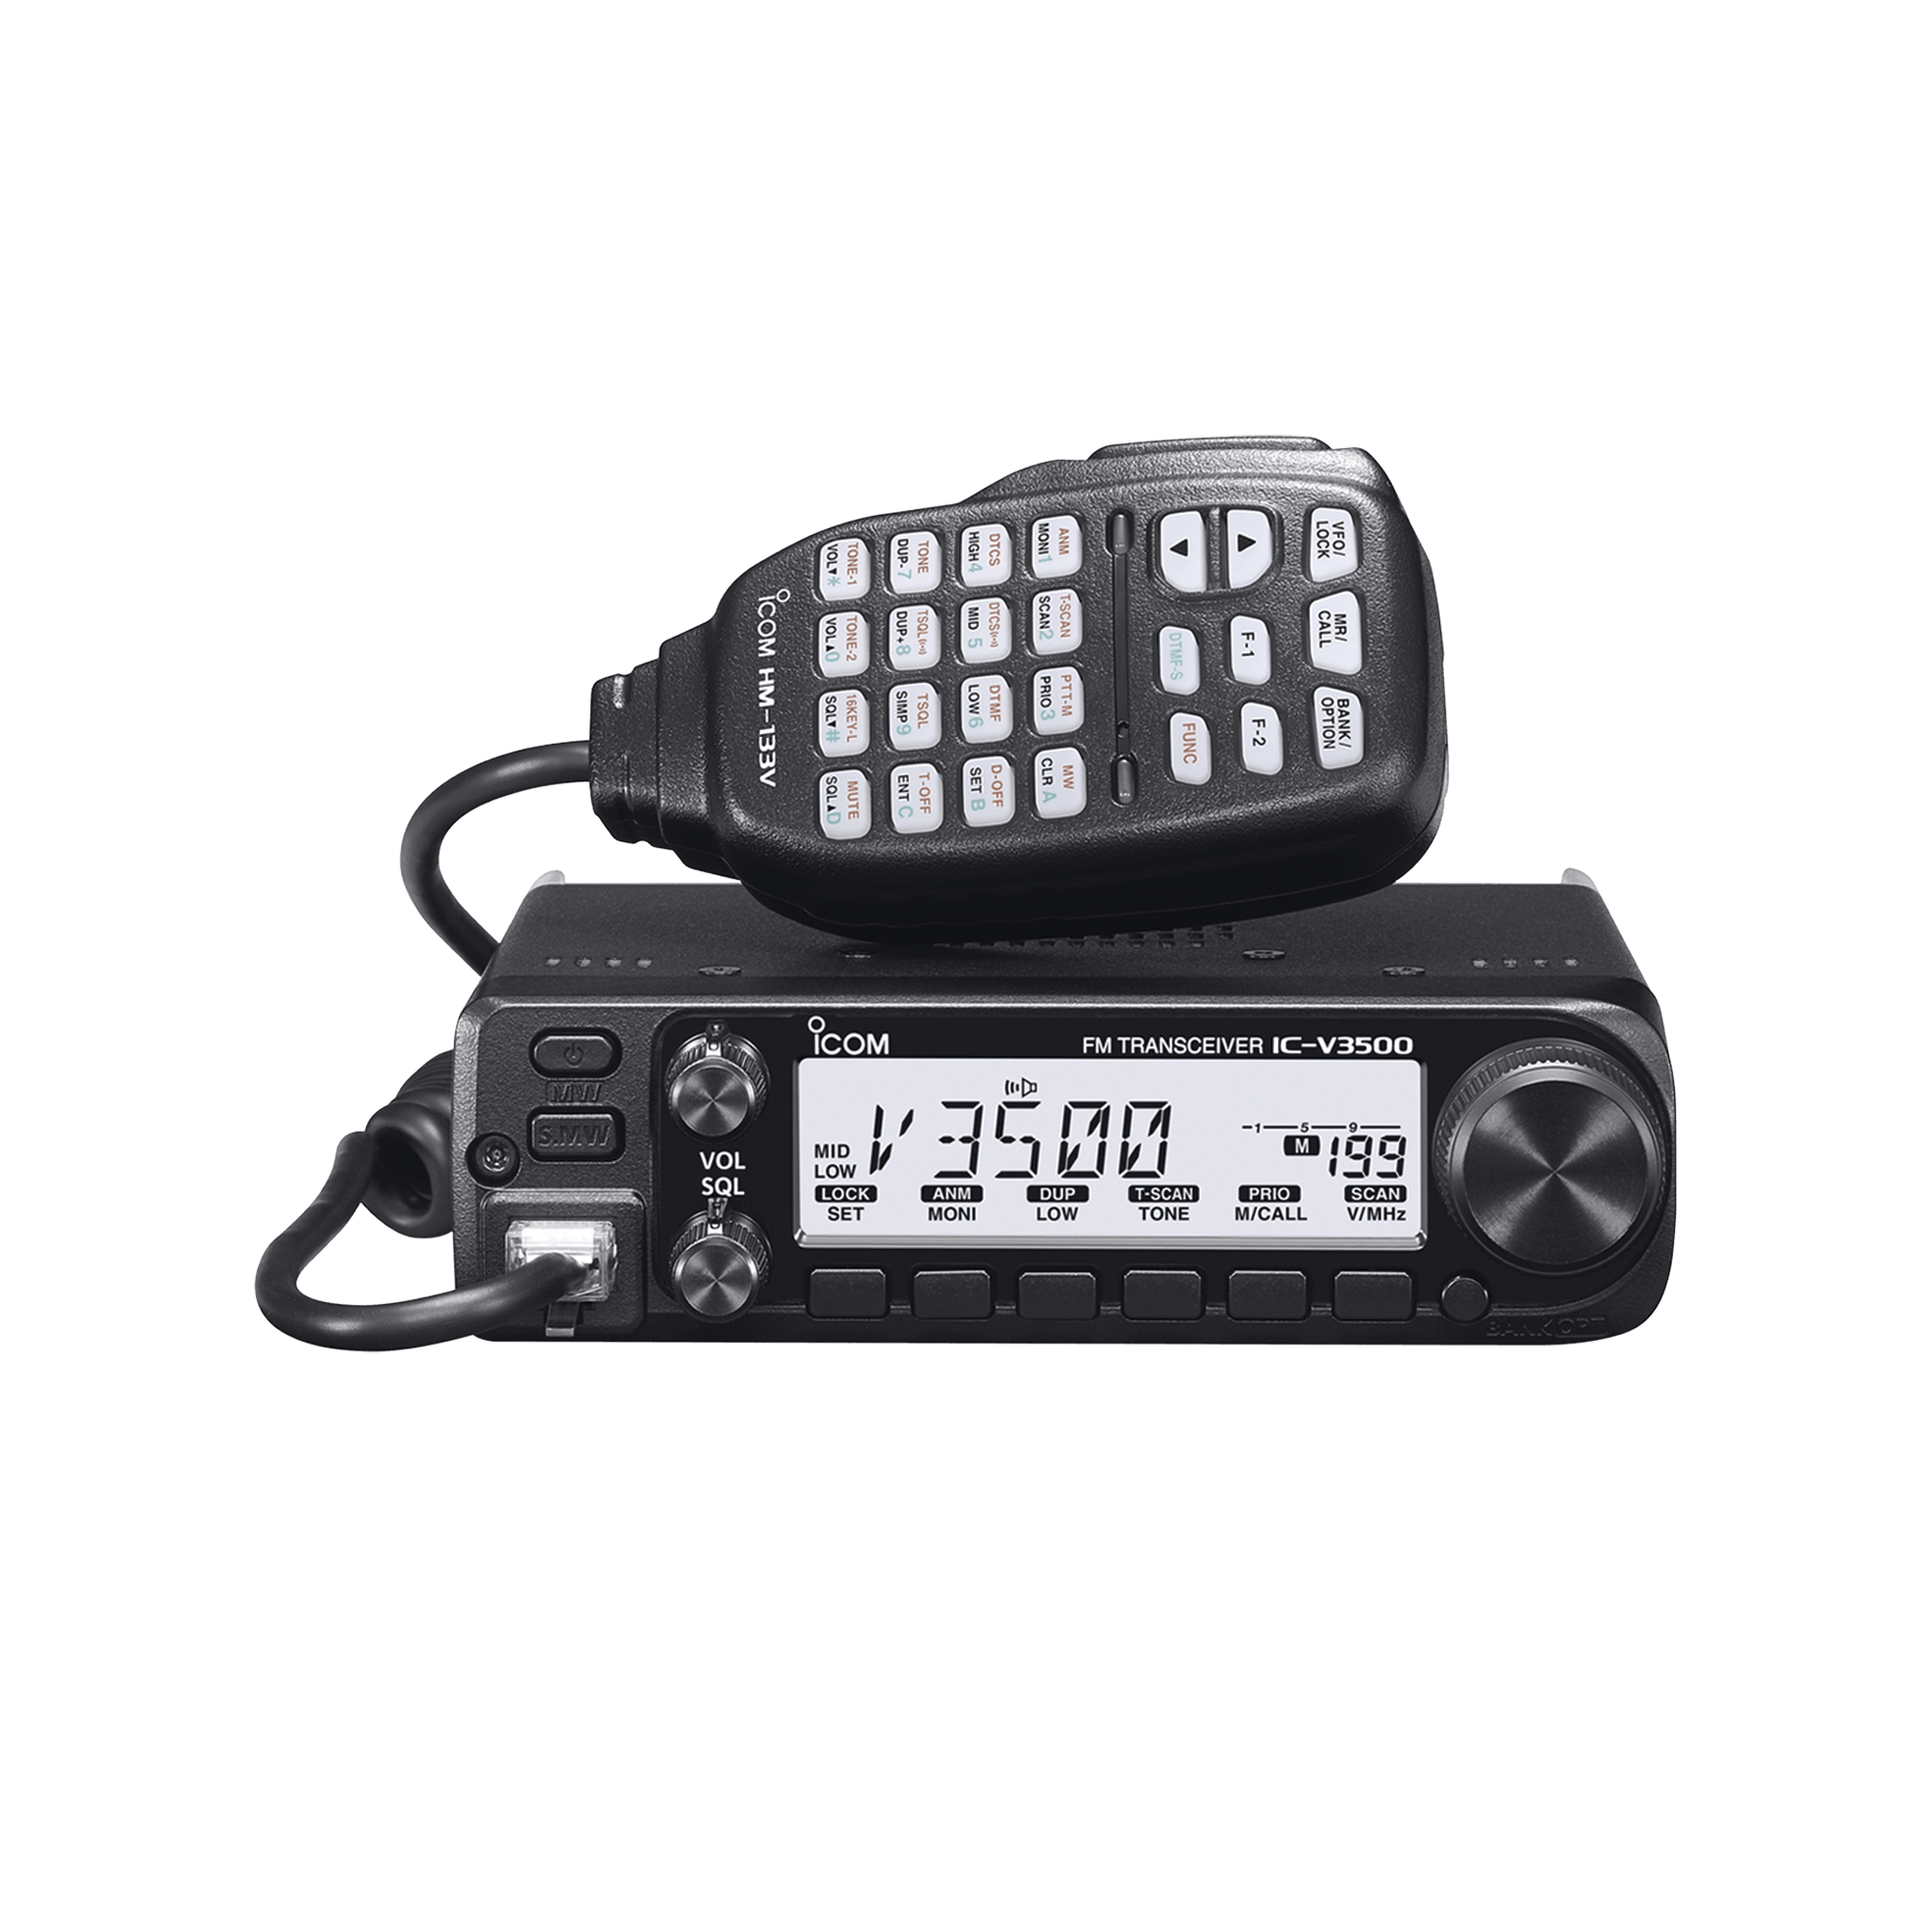 Radio móvil para aficionados con potencia de salida de 65W, Rx:136-174MHz Tx: 144-148MHz, cuenta con 207 memorias, 4.5W de potencia de audio. Incluye micrófono y accesorios de montaje